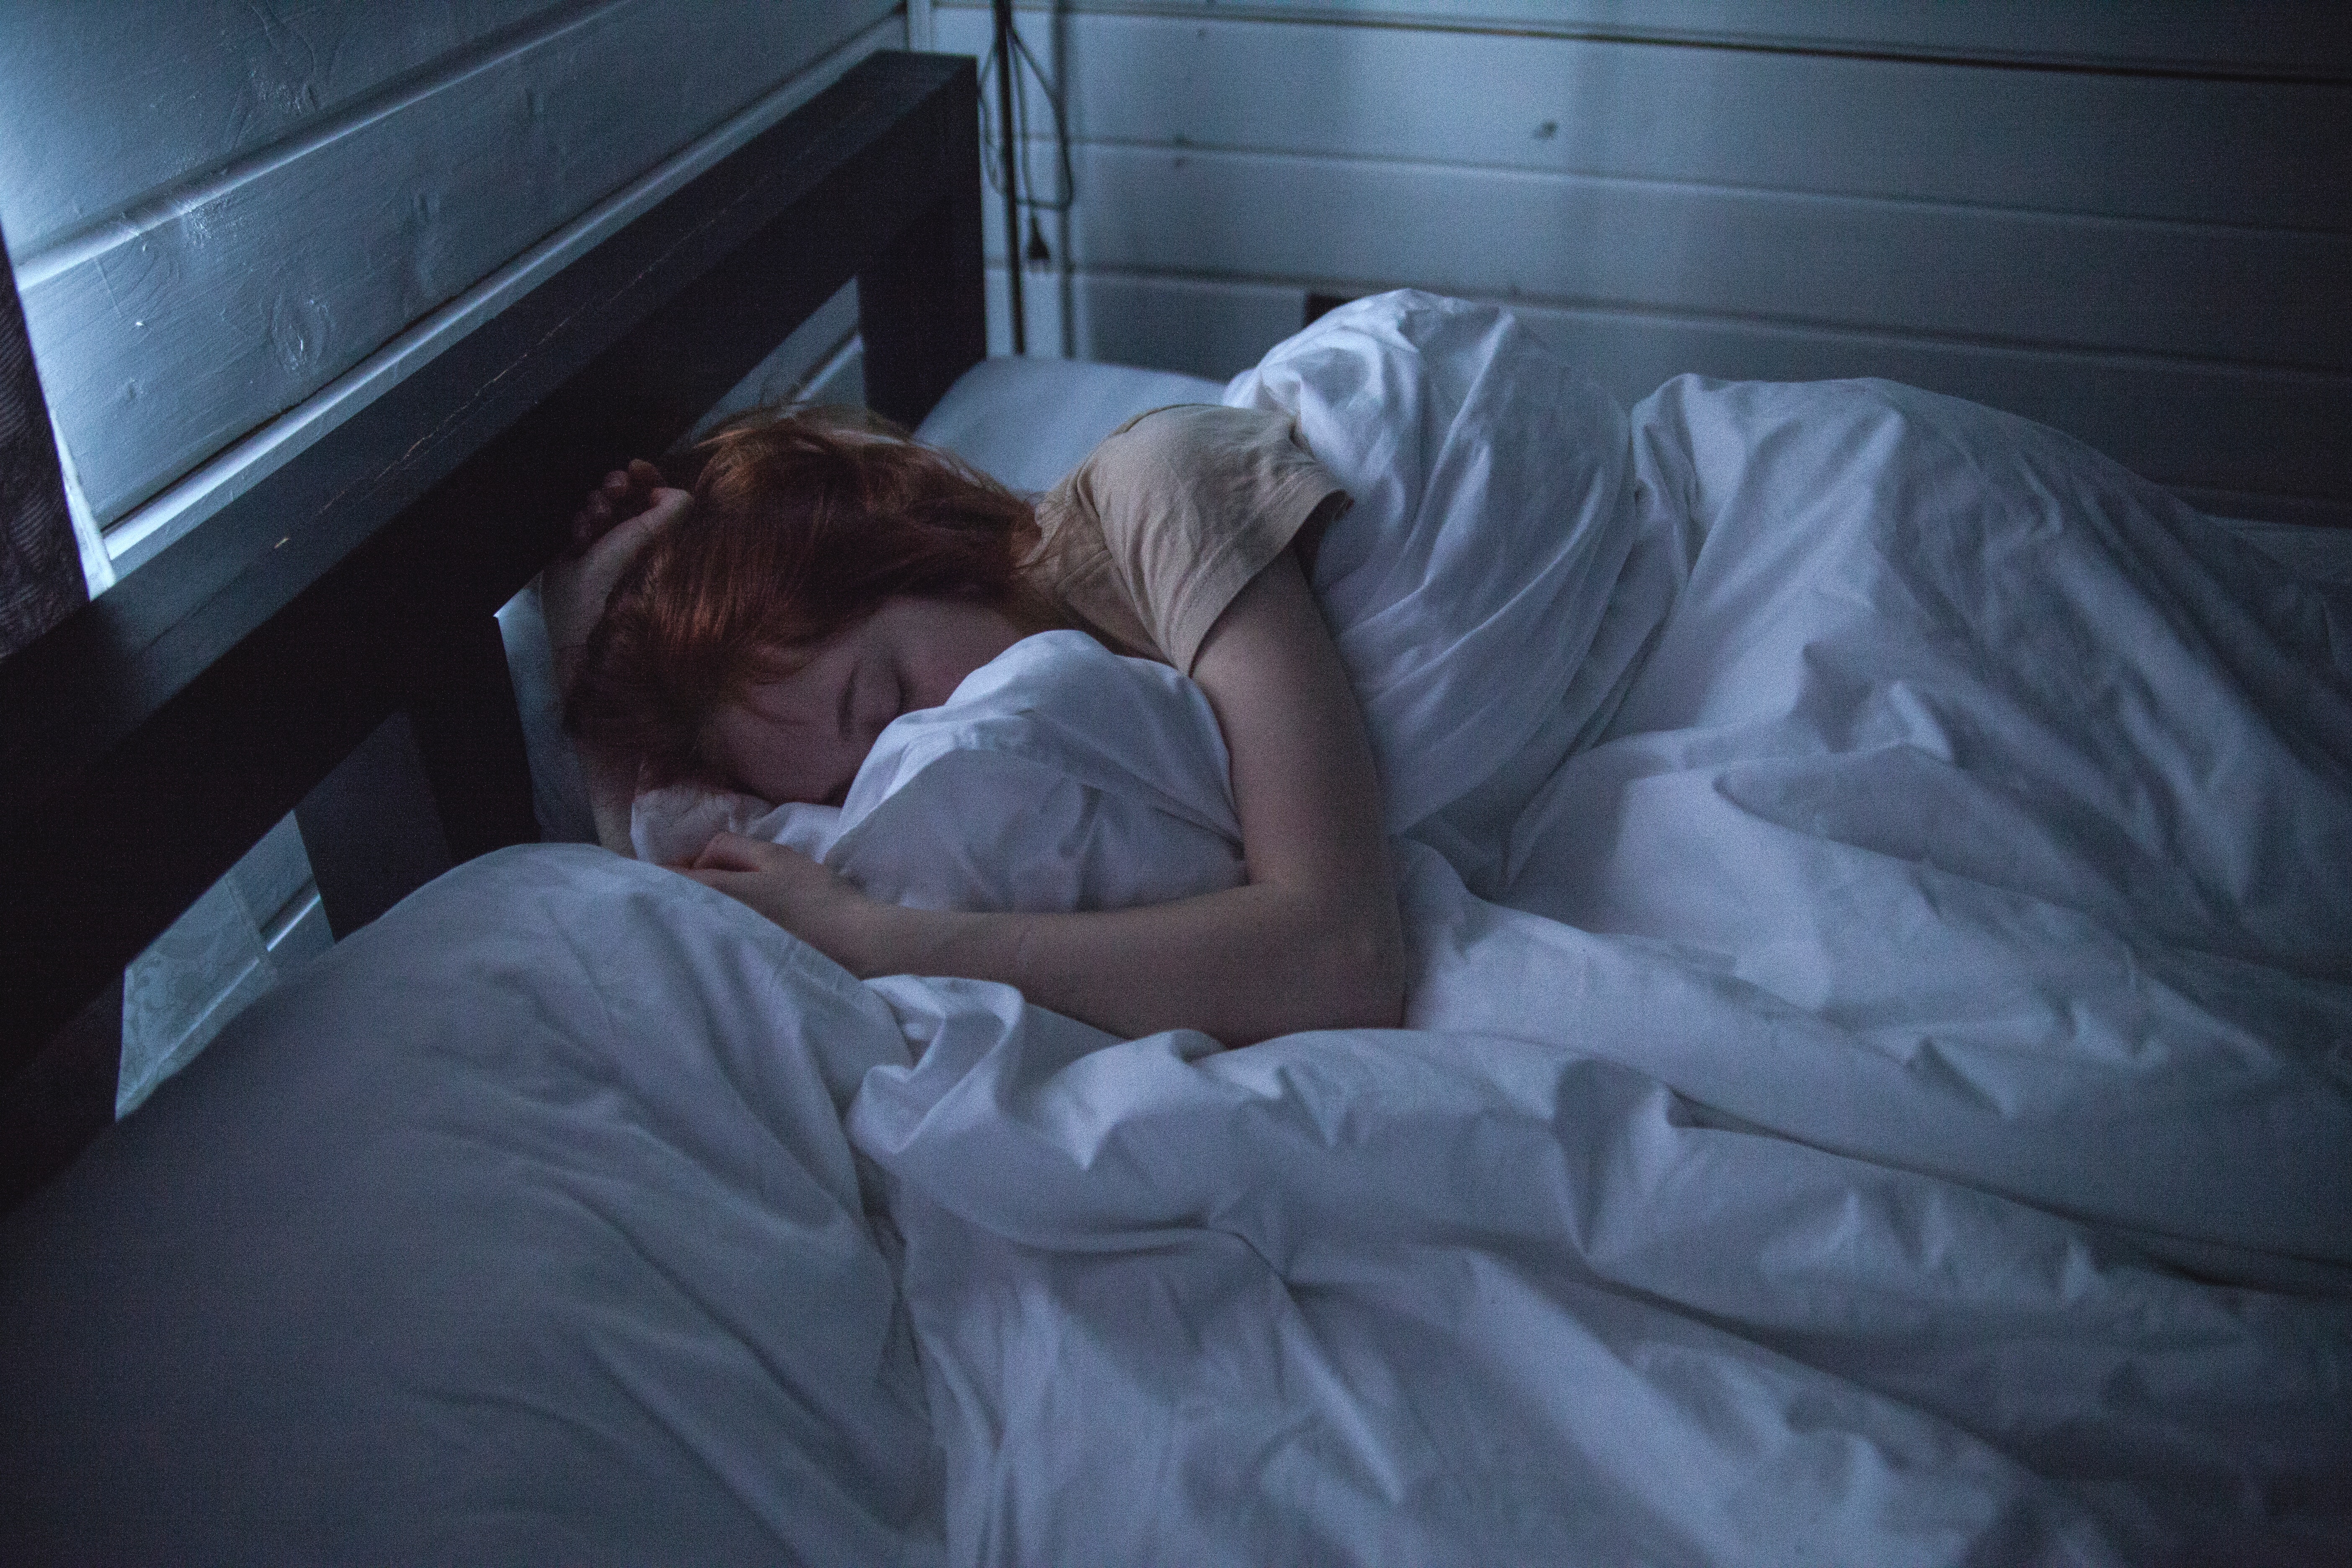 Vrouw die in bed ligt omdat ze last heeft van PMS klachten vlak voor haar menstruatie weer begint